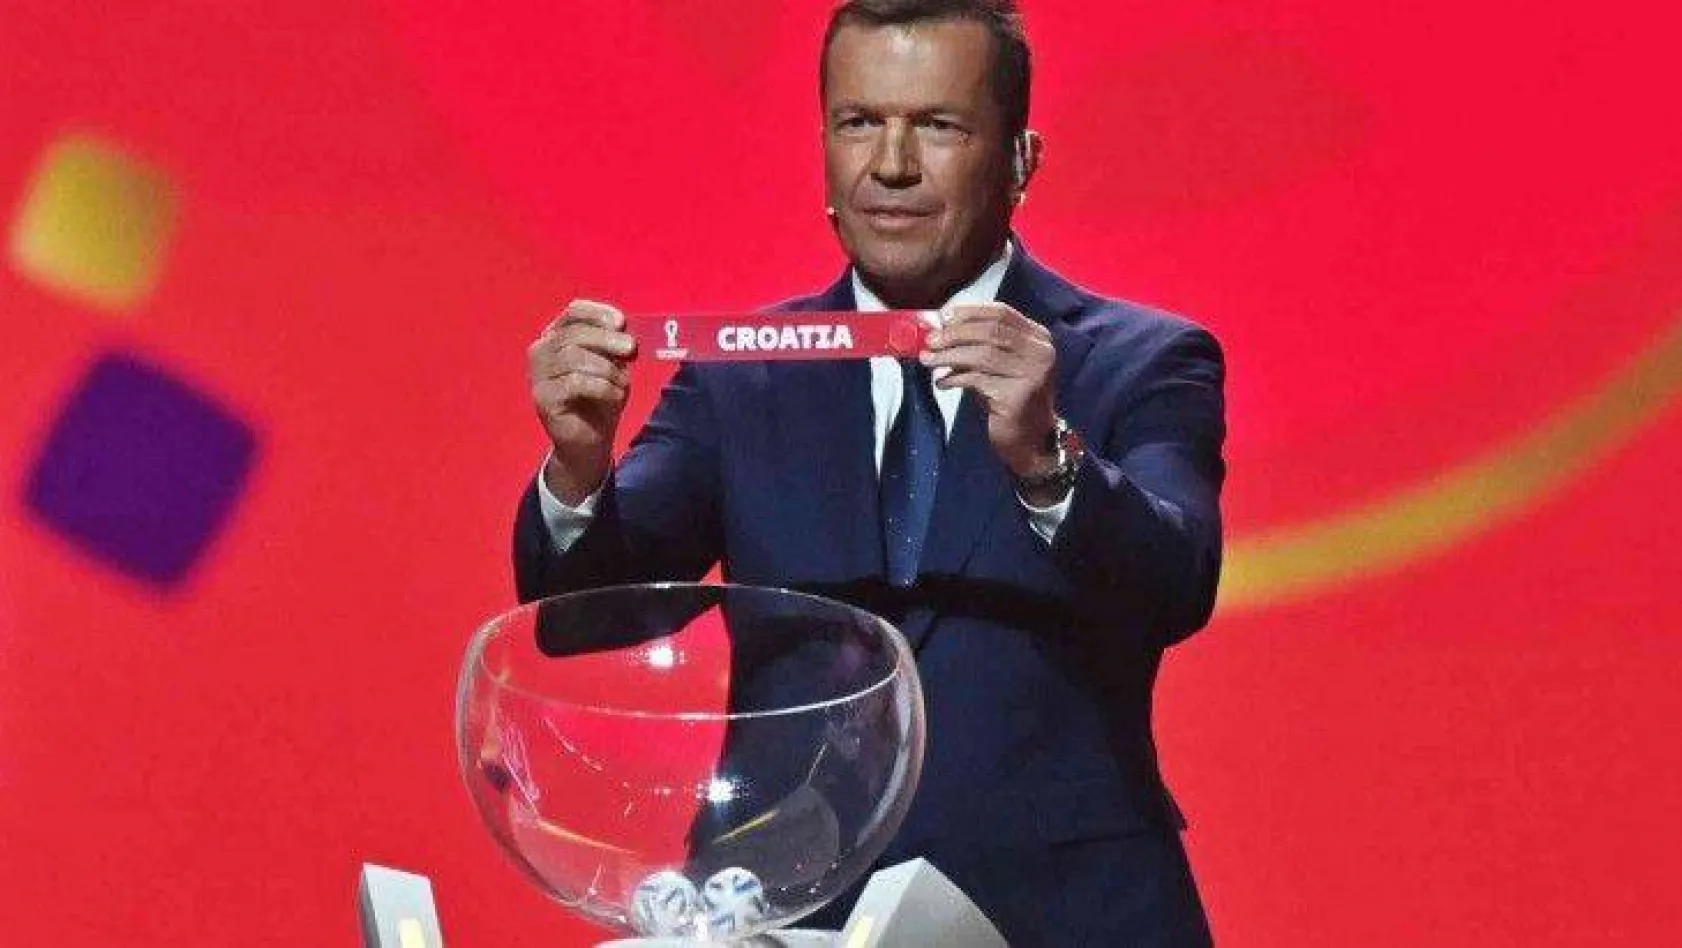 2022 FIFA Dünya Kupası'nda gruplar belli oldu